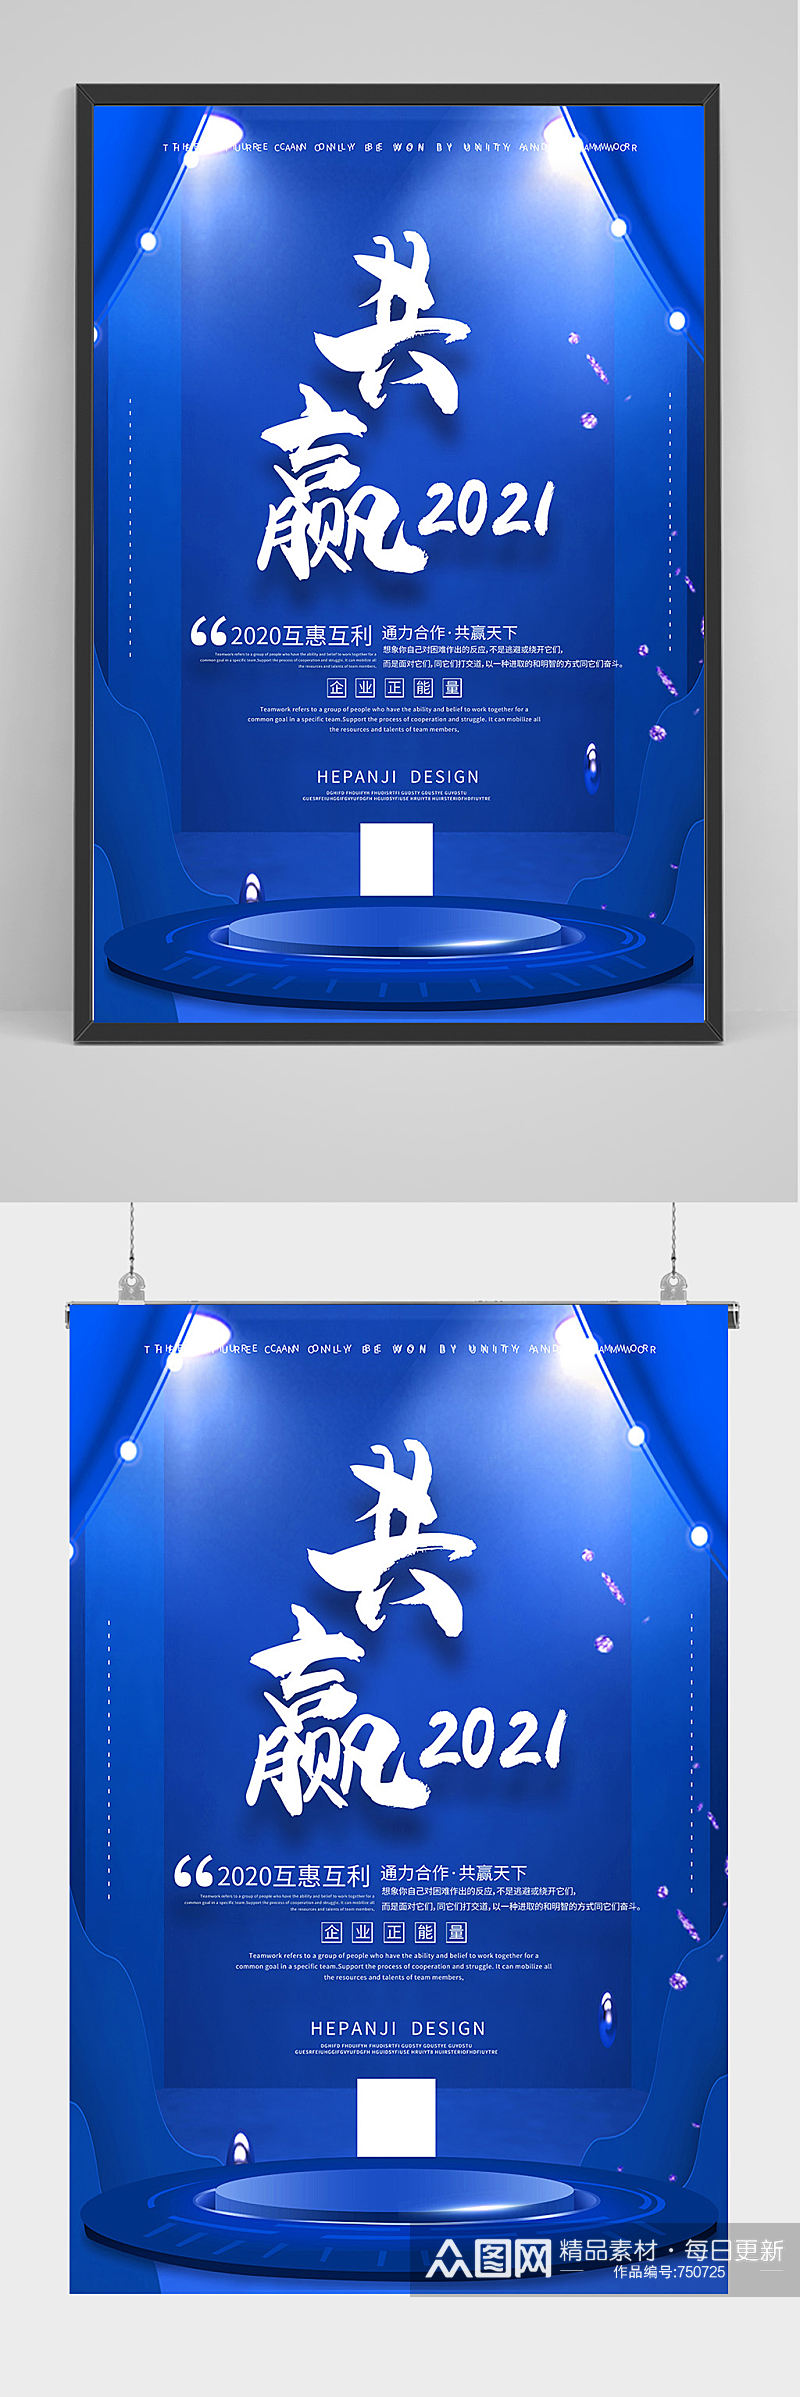 蓝色科技共赢公司海报设计素材